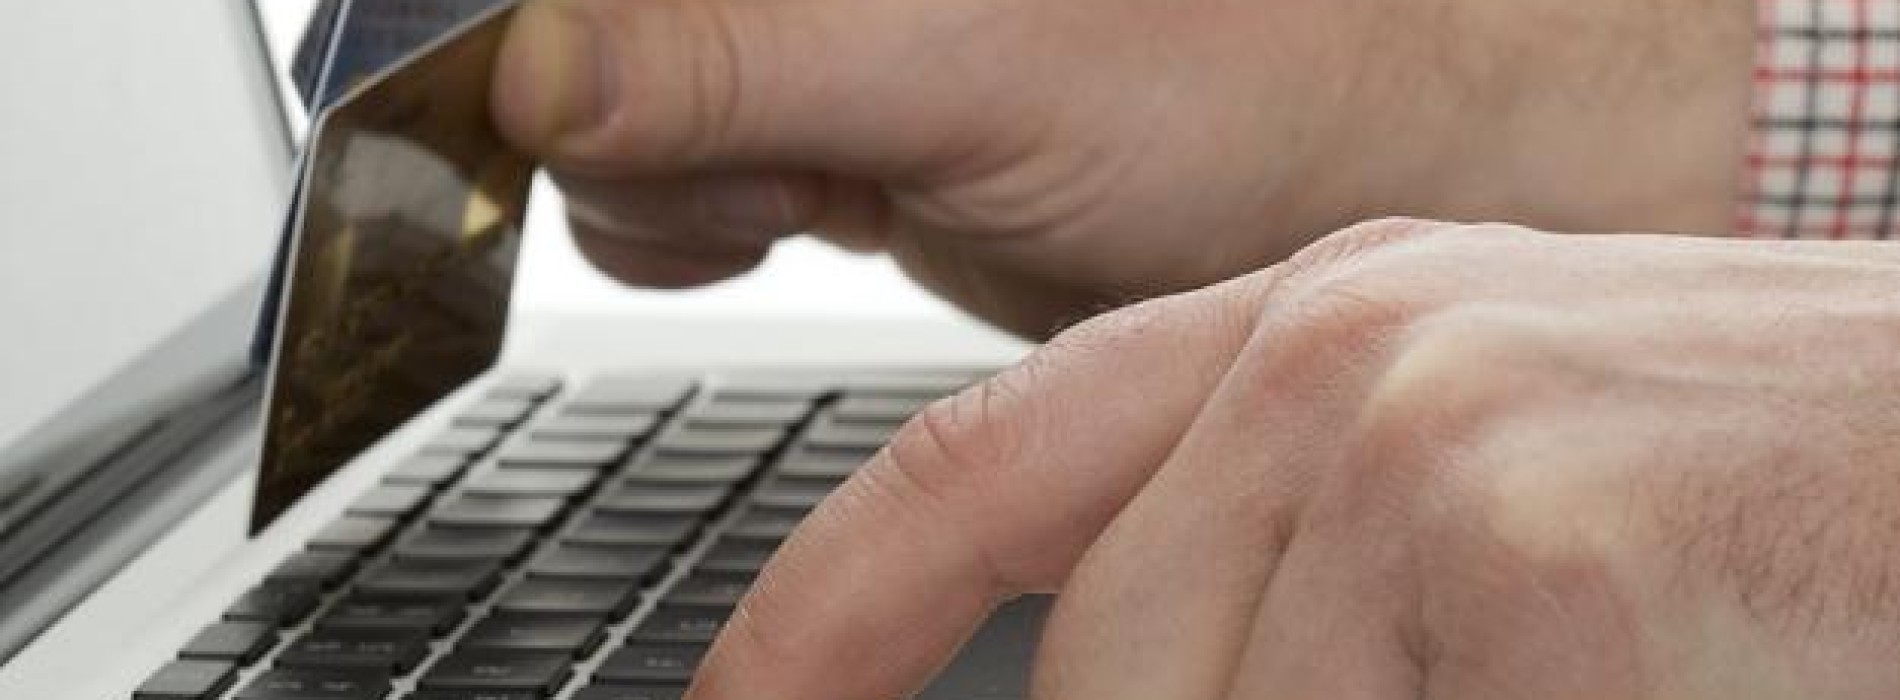 Użytkownicy unikają płatności online z obawy o bezpieczeństwo